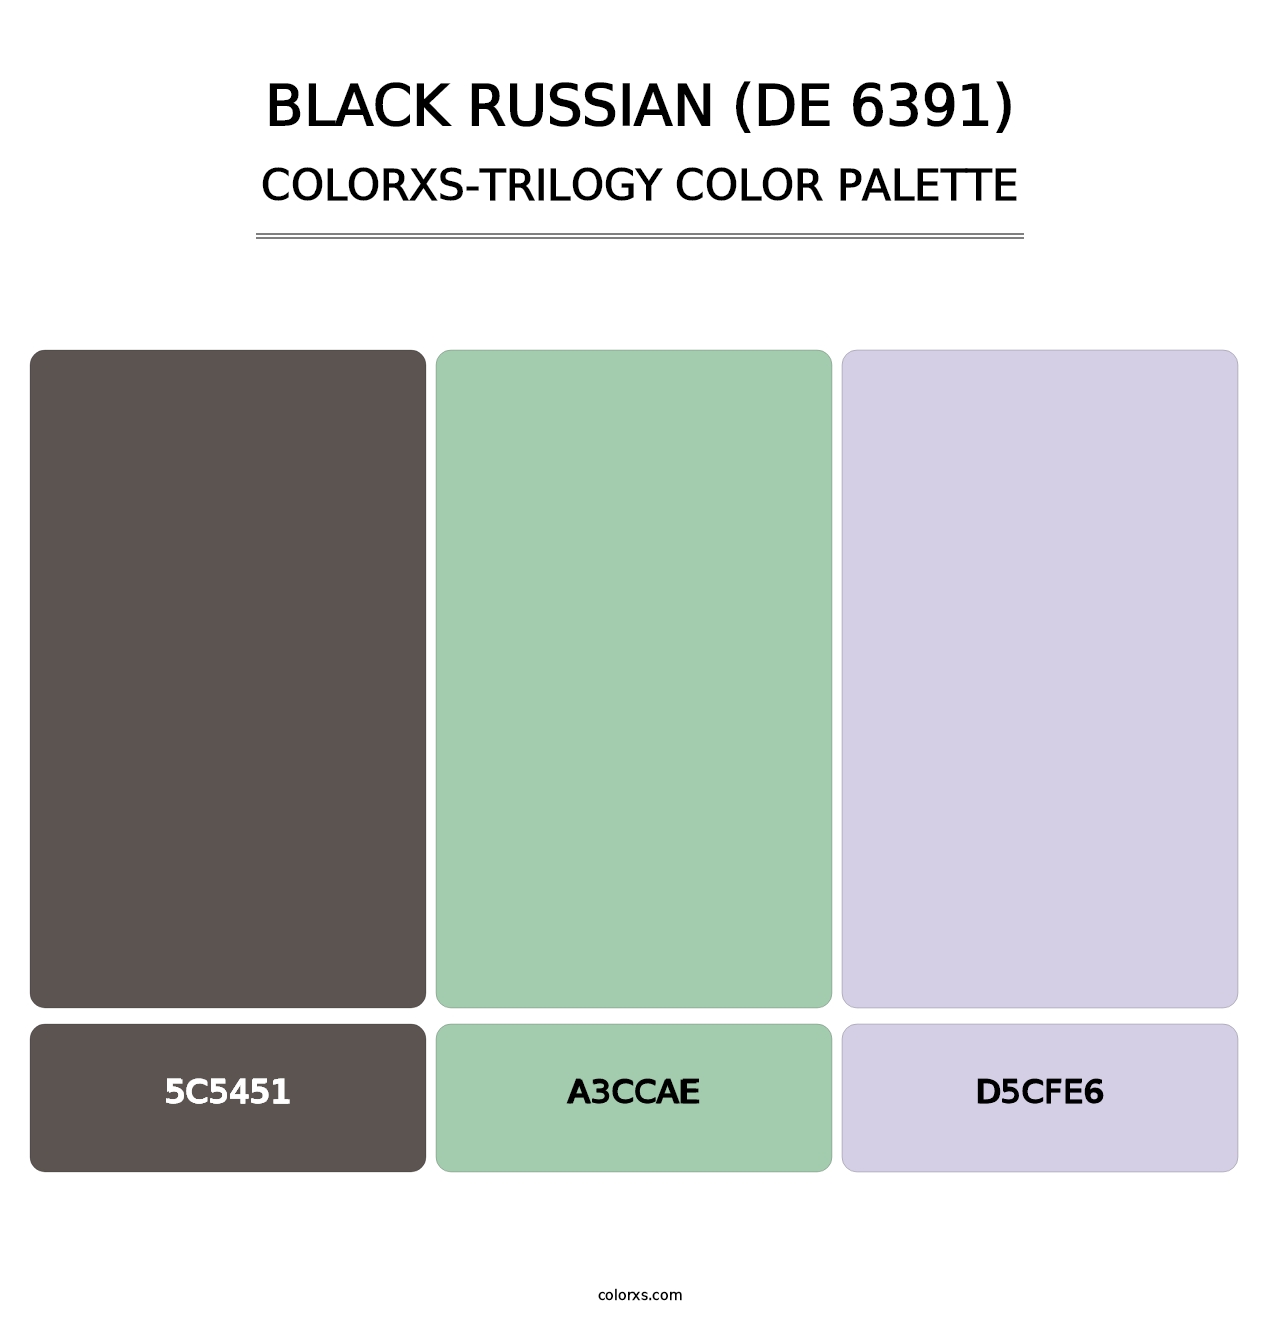 Black Russian (DE 6391) - Colorxs Trilogy Palette